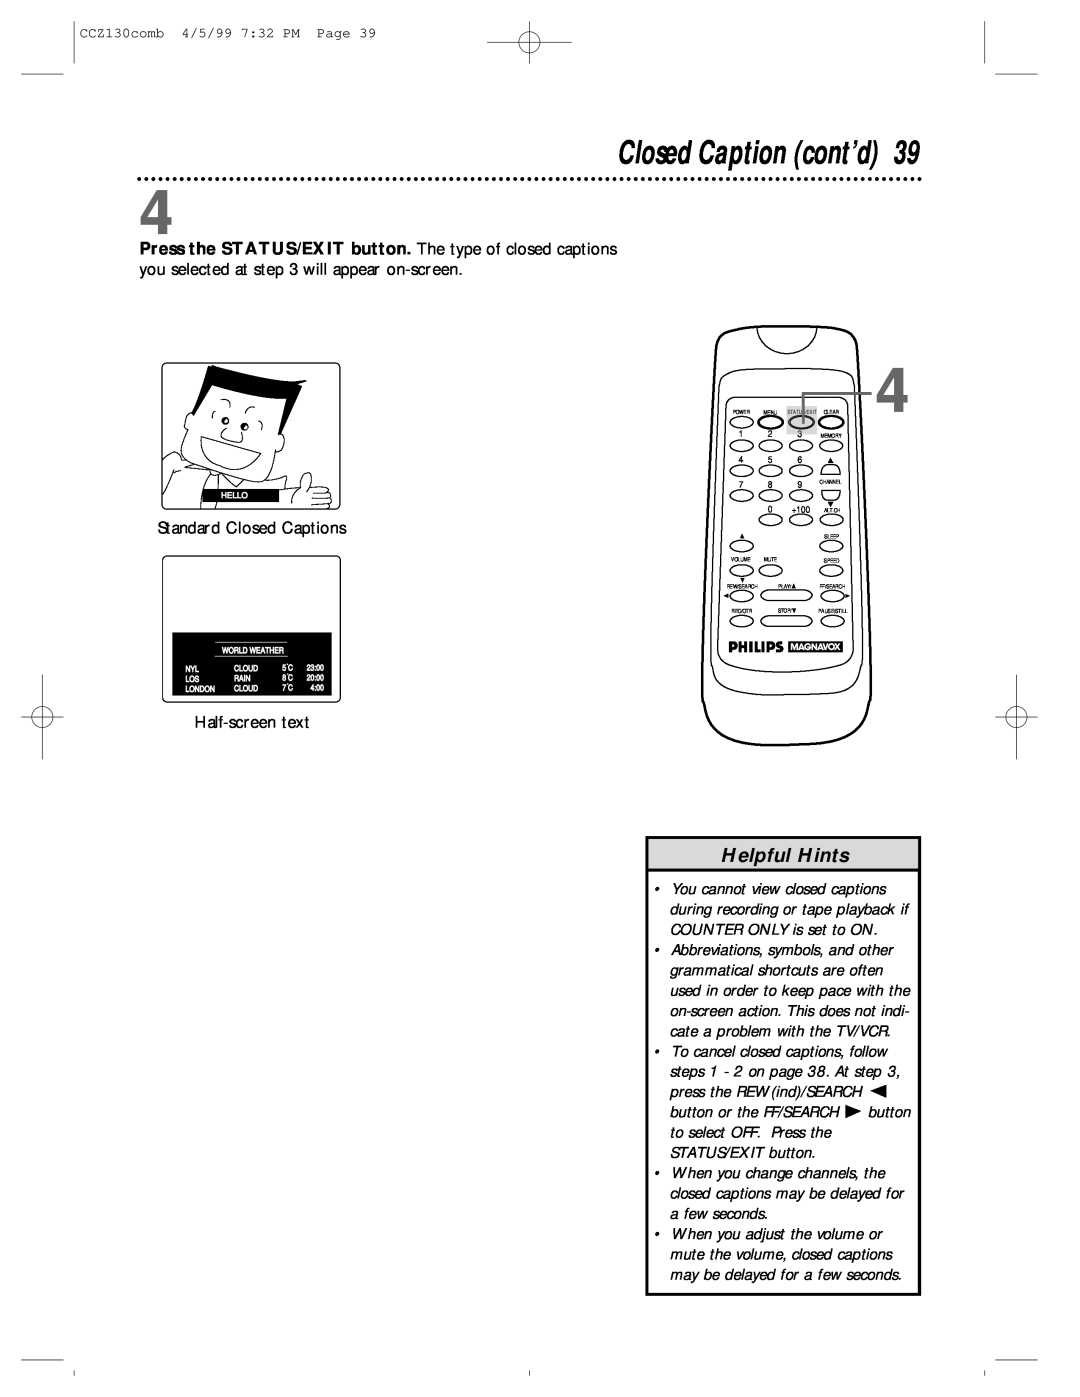 Magnavox CCZ130AT owner manual Closed Caption cont’d, Helpful Hints, Standard Closed Captions, Half-screen text 